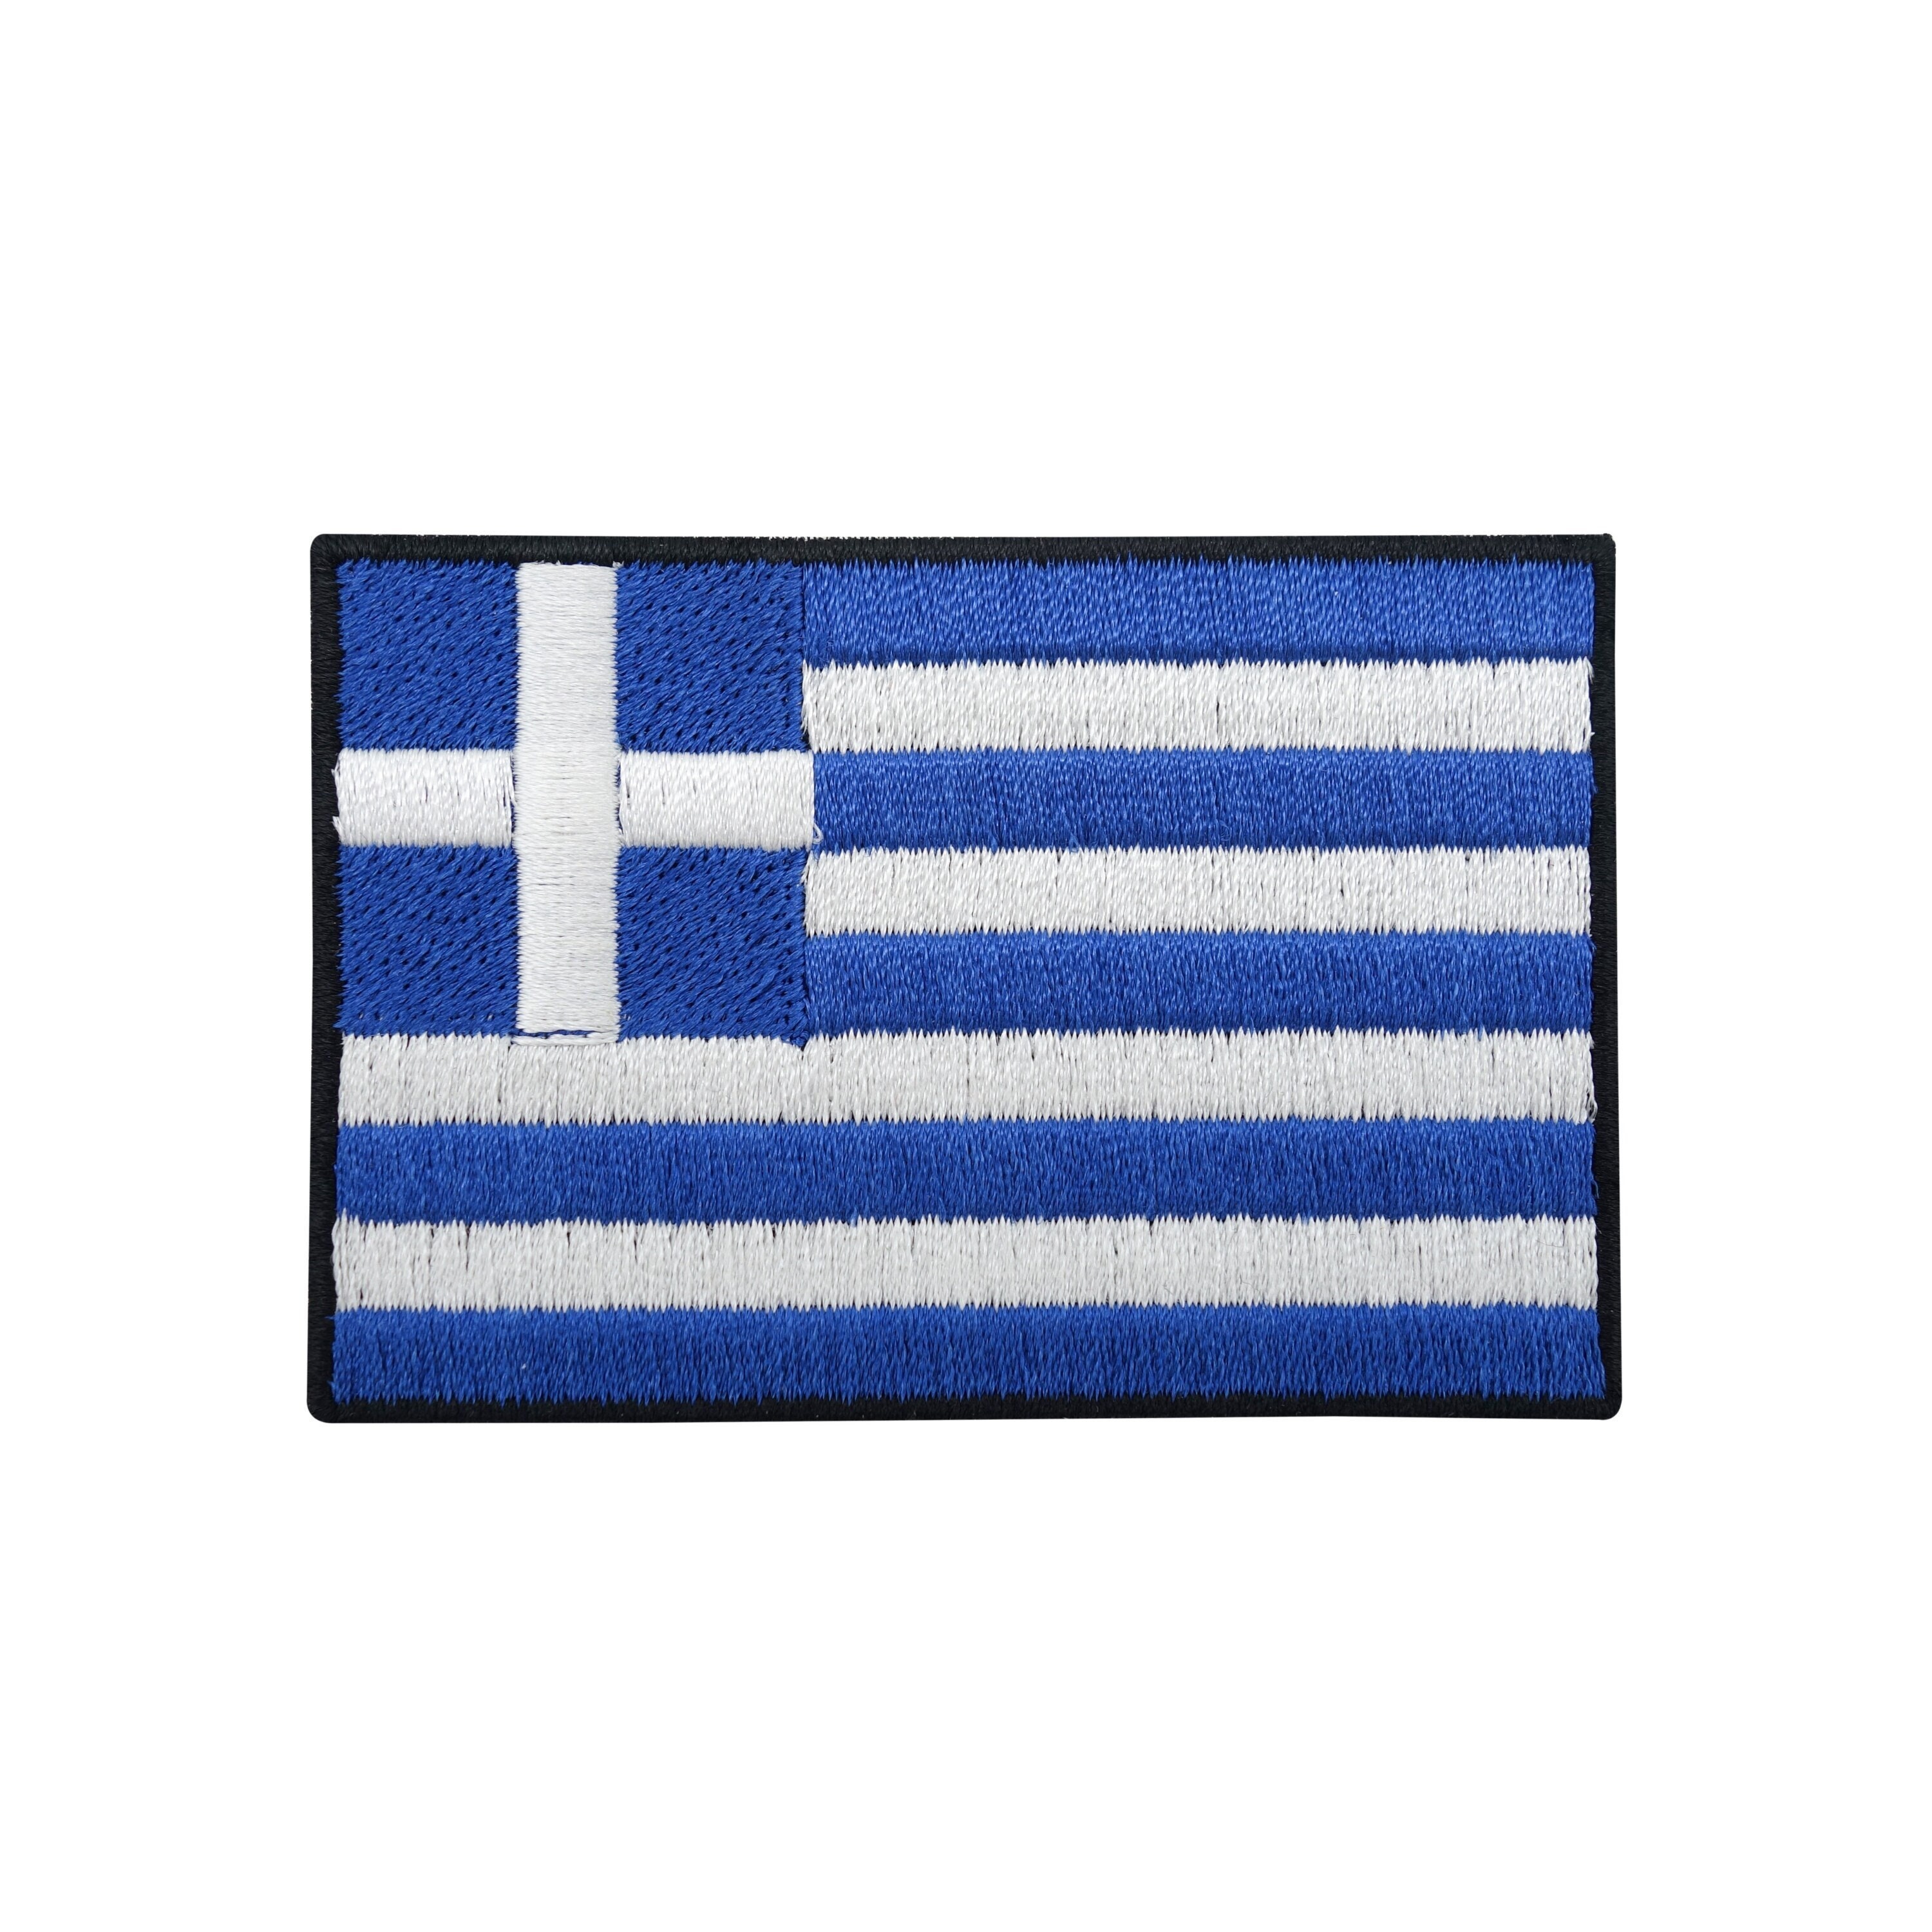 Laden Sie Flaggenkarte von Griechenland. Umrisse von Griechenland. Flagge  der griechischen Republik in blau…